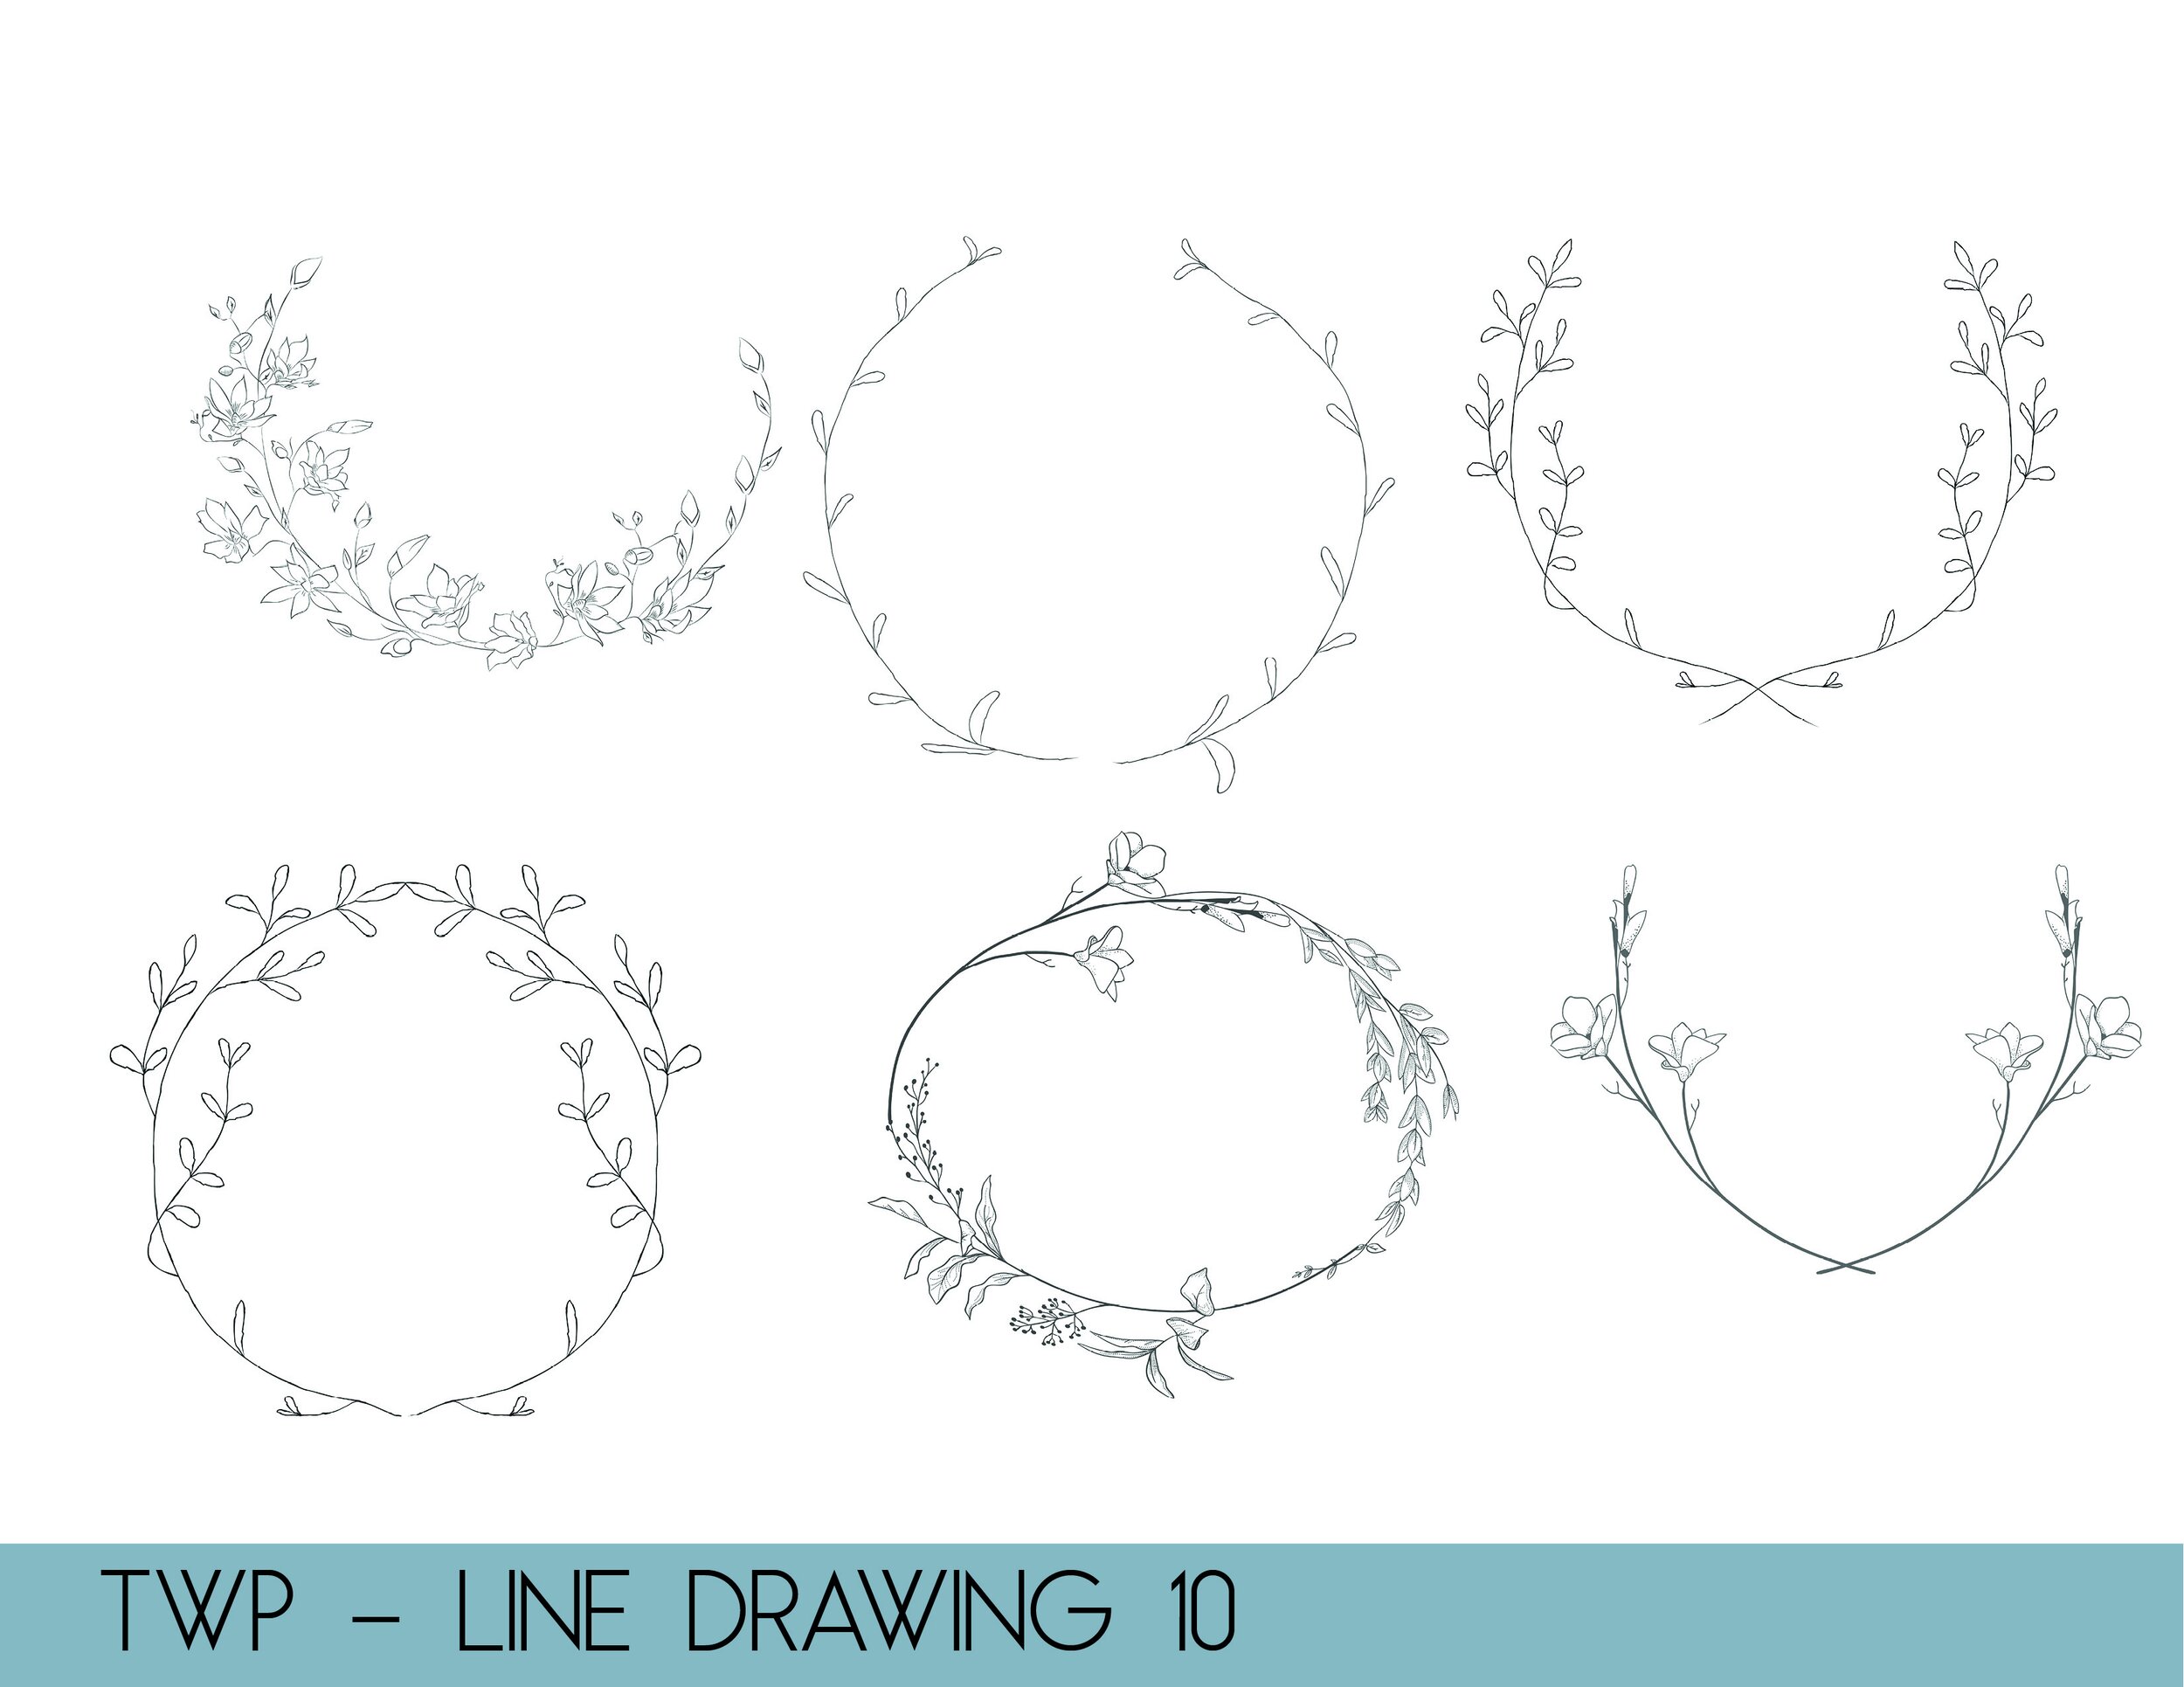 line drawings - website10.jpg